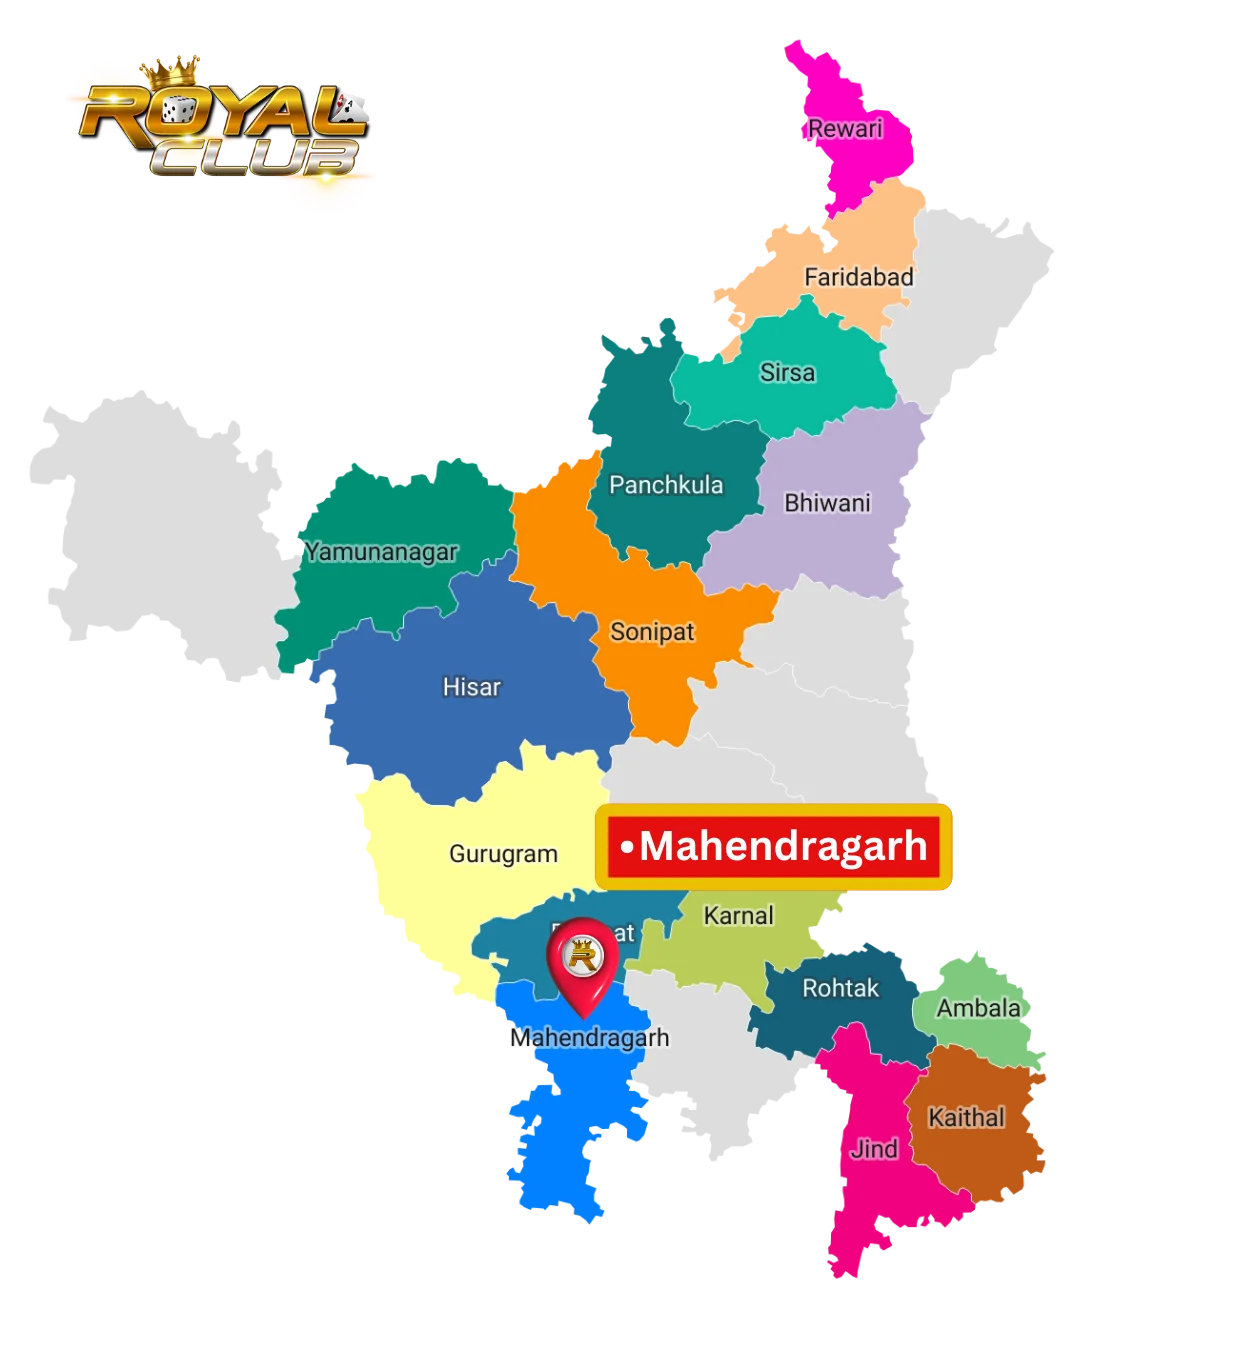 Aviator Game in Mahendragarh